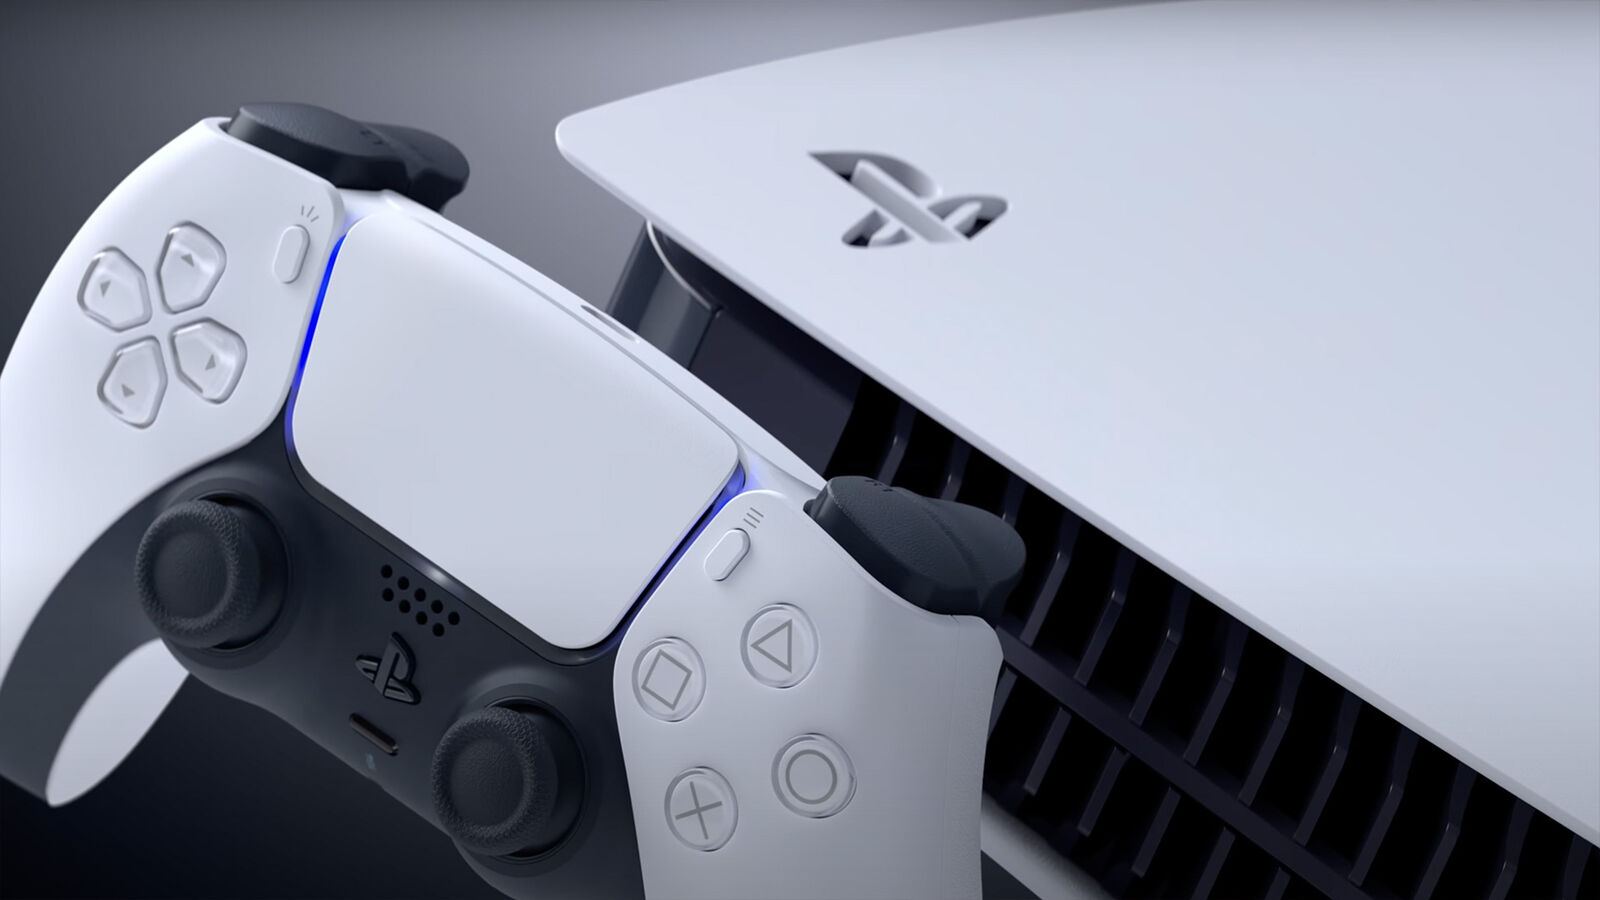 索尼對於 PS5 庫存狀況感到信心滿滿，期望能超越 PS4 主機在生命週期同期的出貨表現 - 電腦王阿達